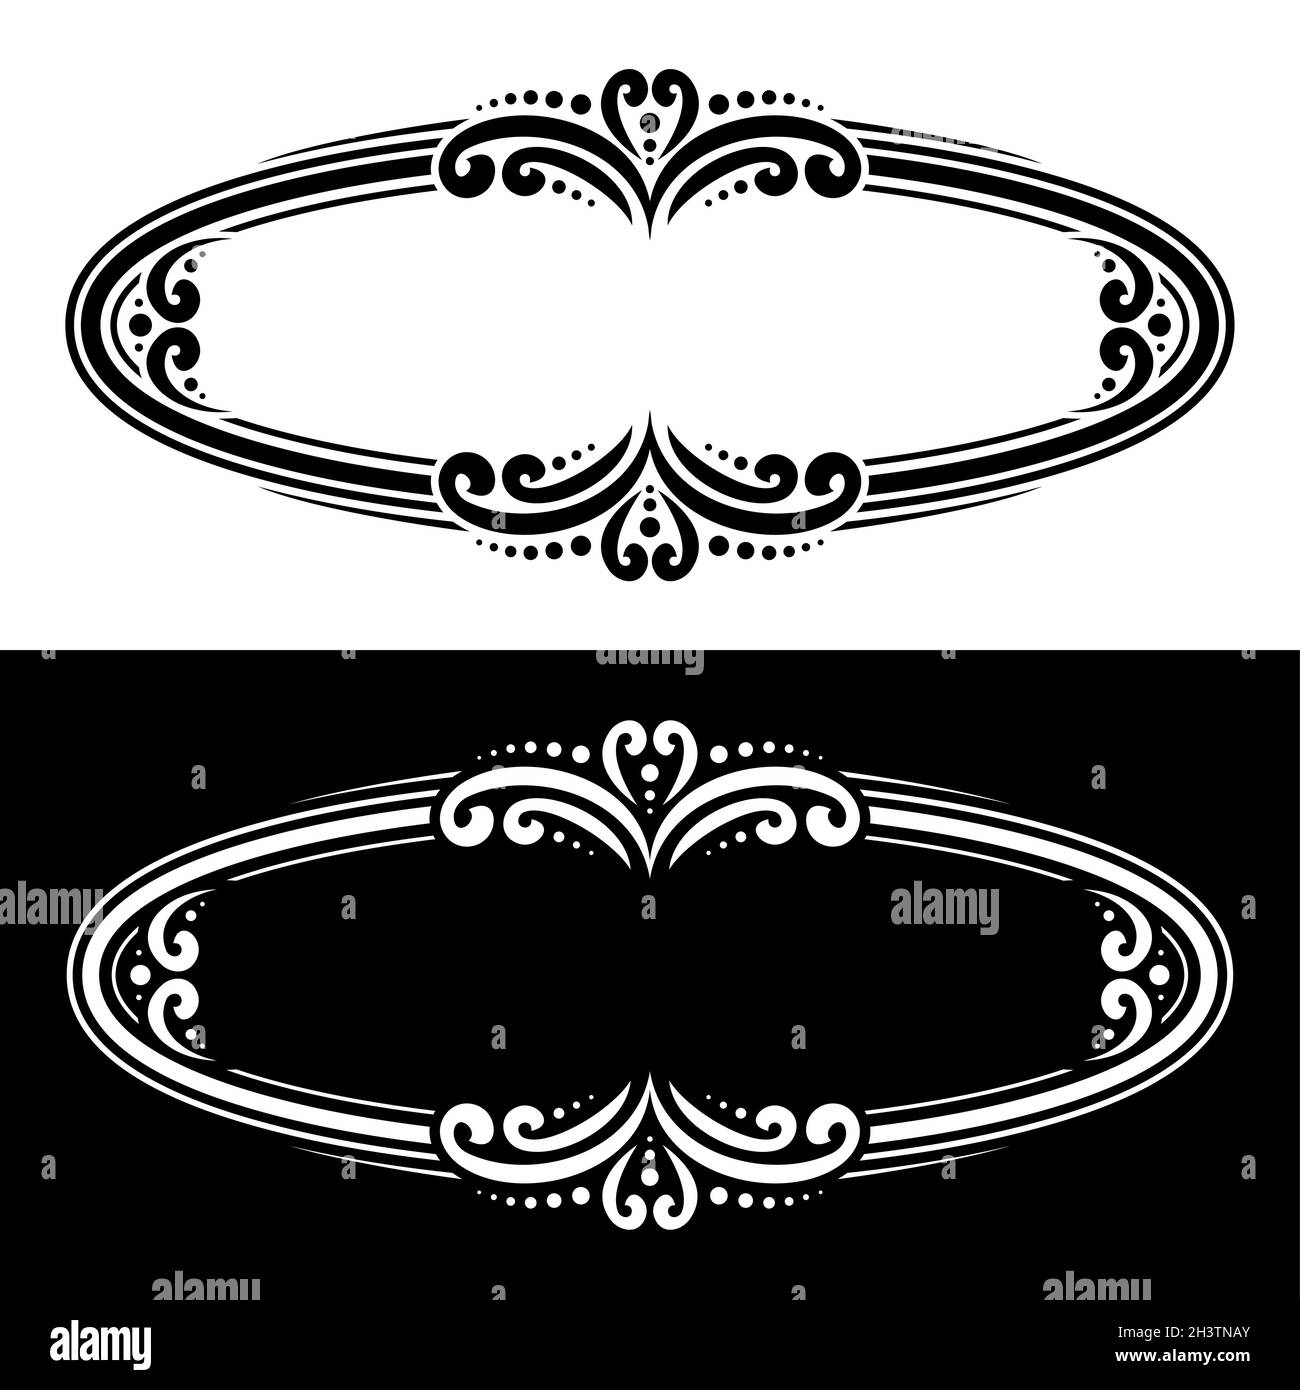 Vector ovale Dekorrahmen für Grußtext, monochrome, anspruchsvolle Bordüren mit eleganten Illustrationen und Copyspace, ovale Kalligrafie-Rahmen f Stock Vektor